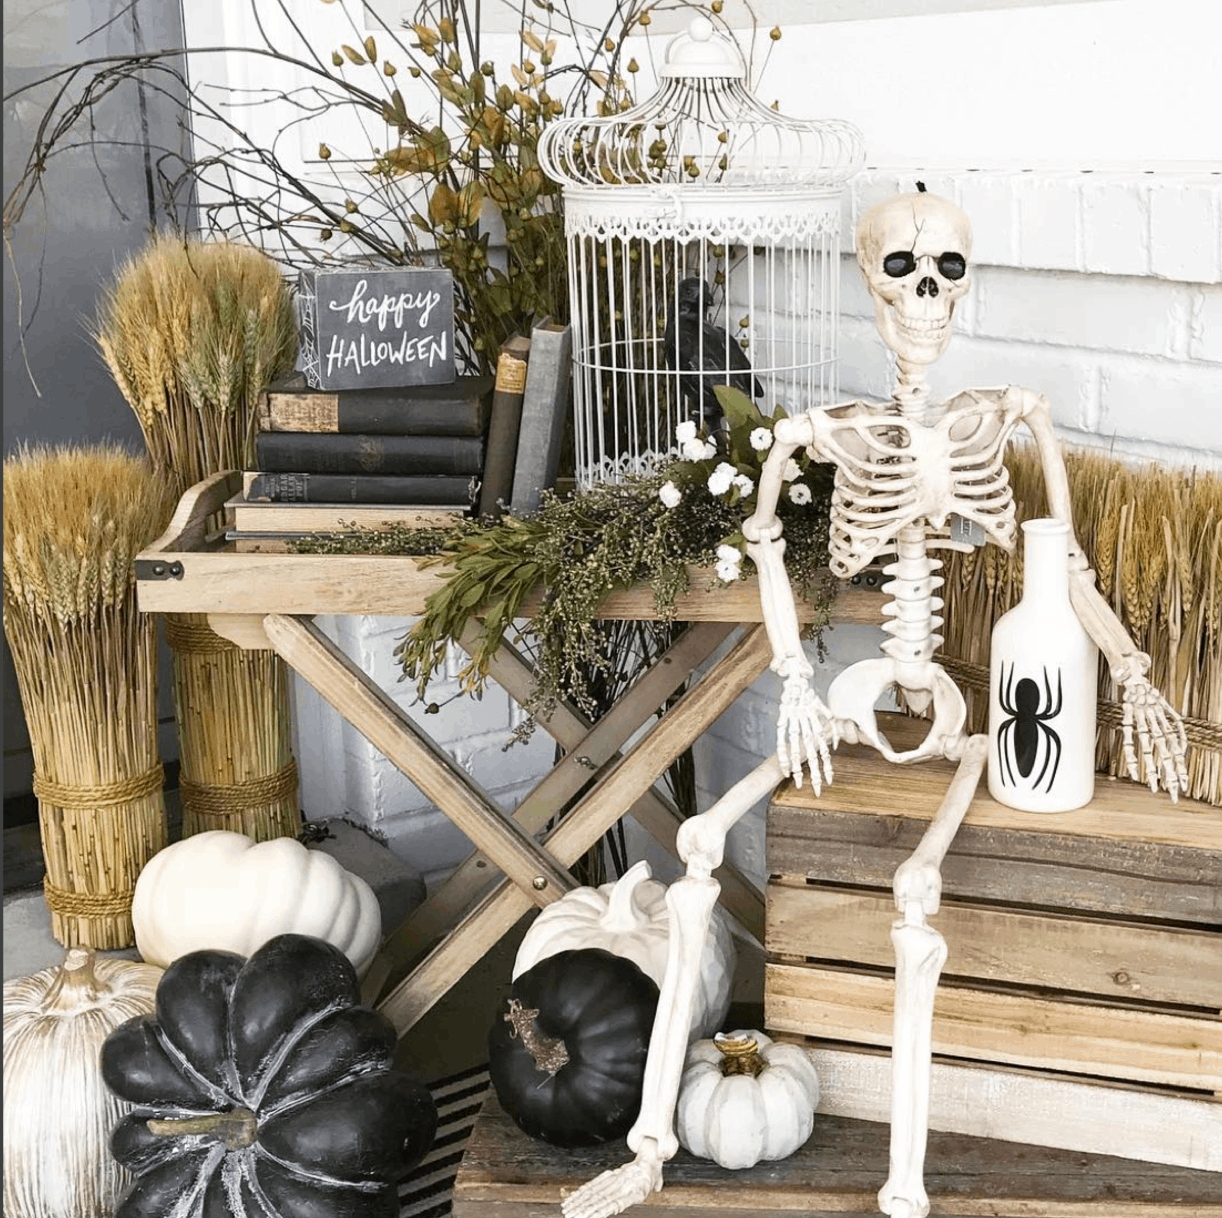 skeletons for halloween